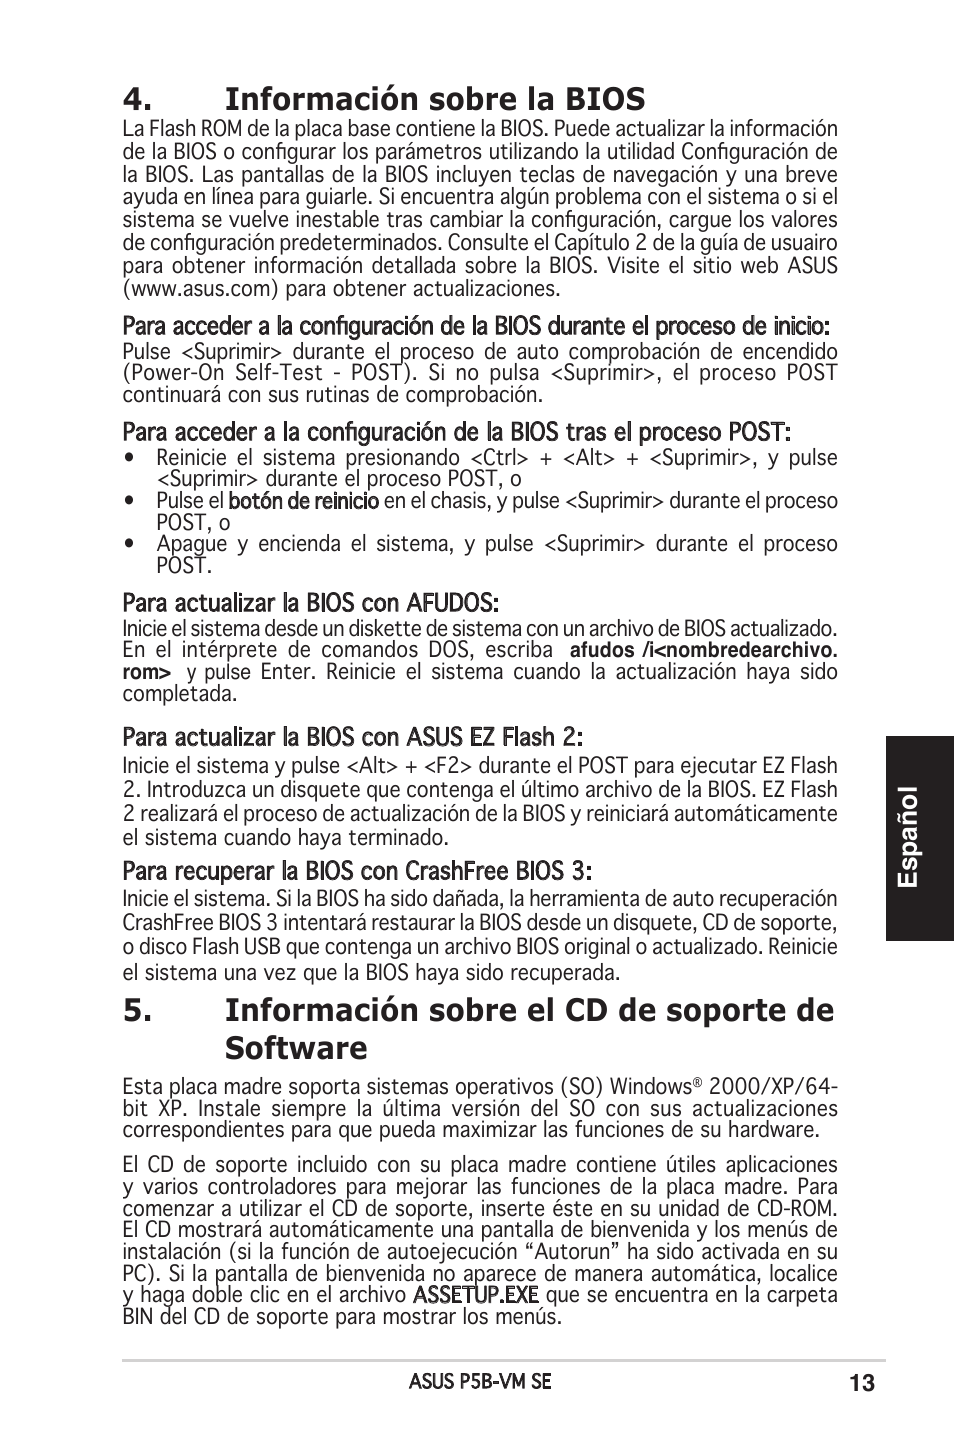 Información sobre la bios, Información sobre el cd de soporte de software,  Español | Asus P5B-VM SE User Manual | Page 13 / 38 | Original mode